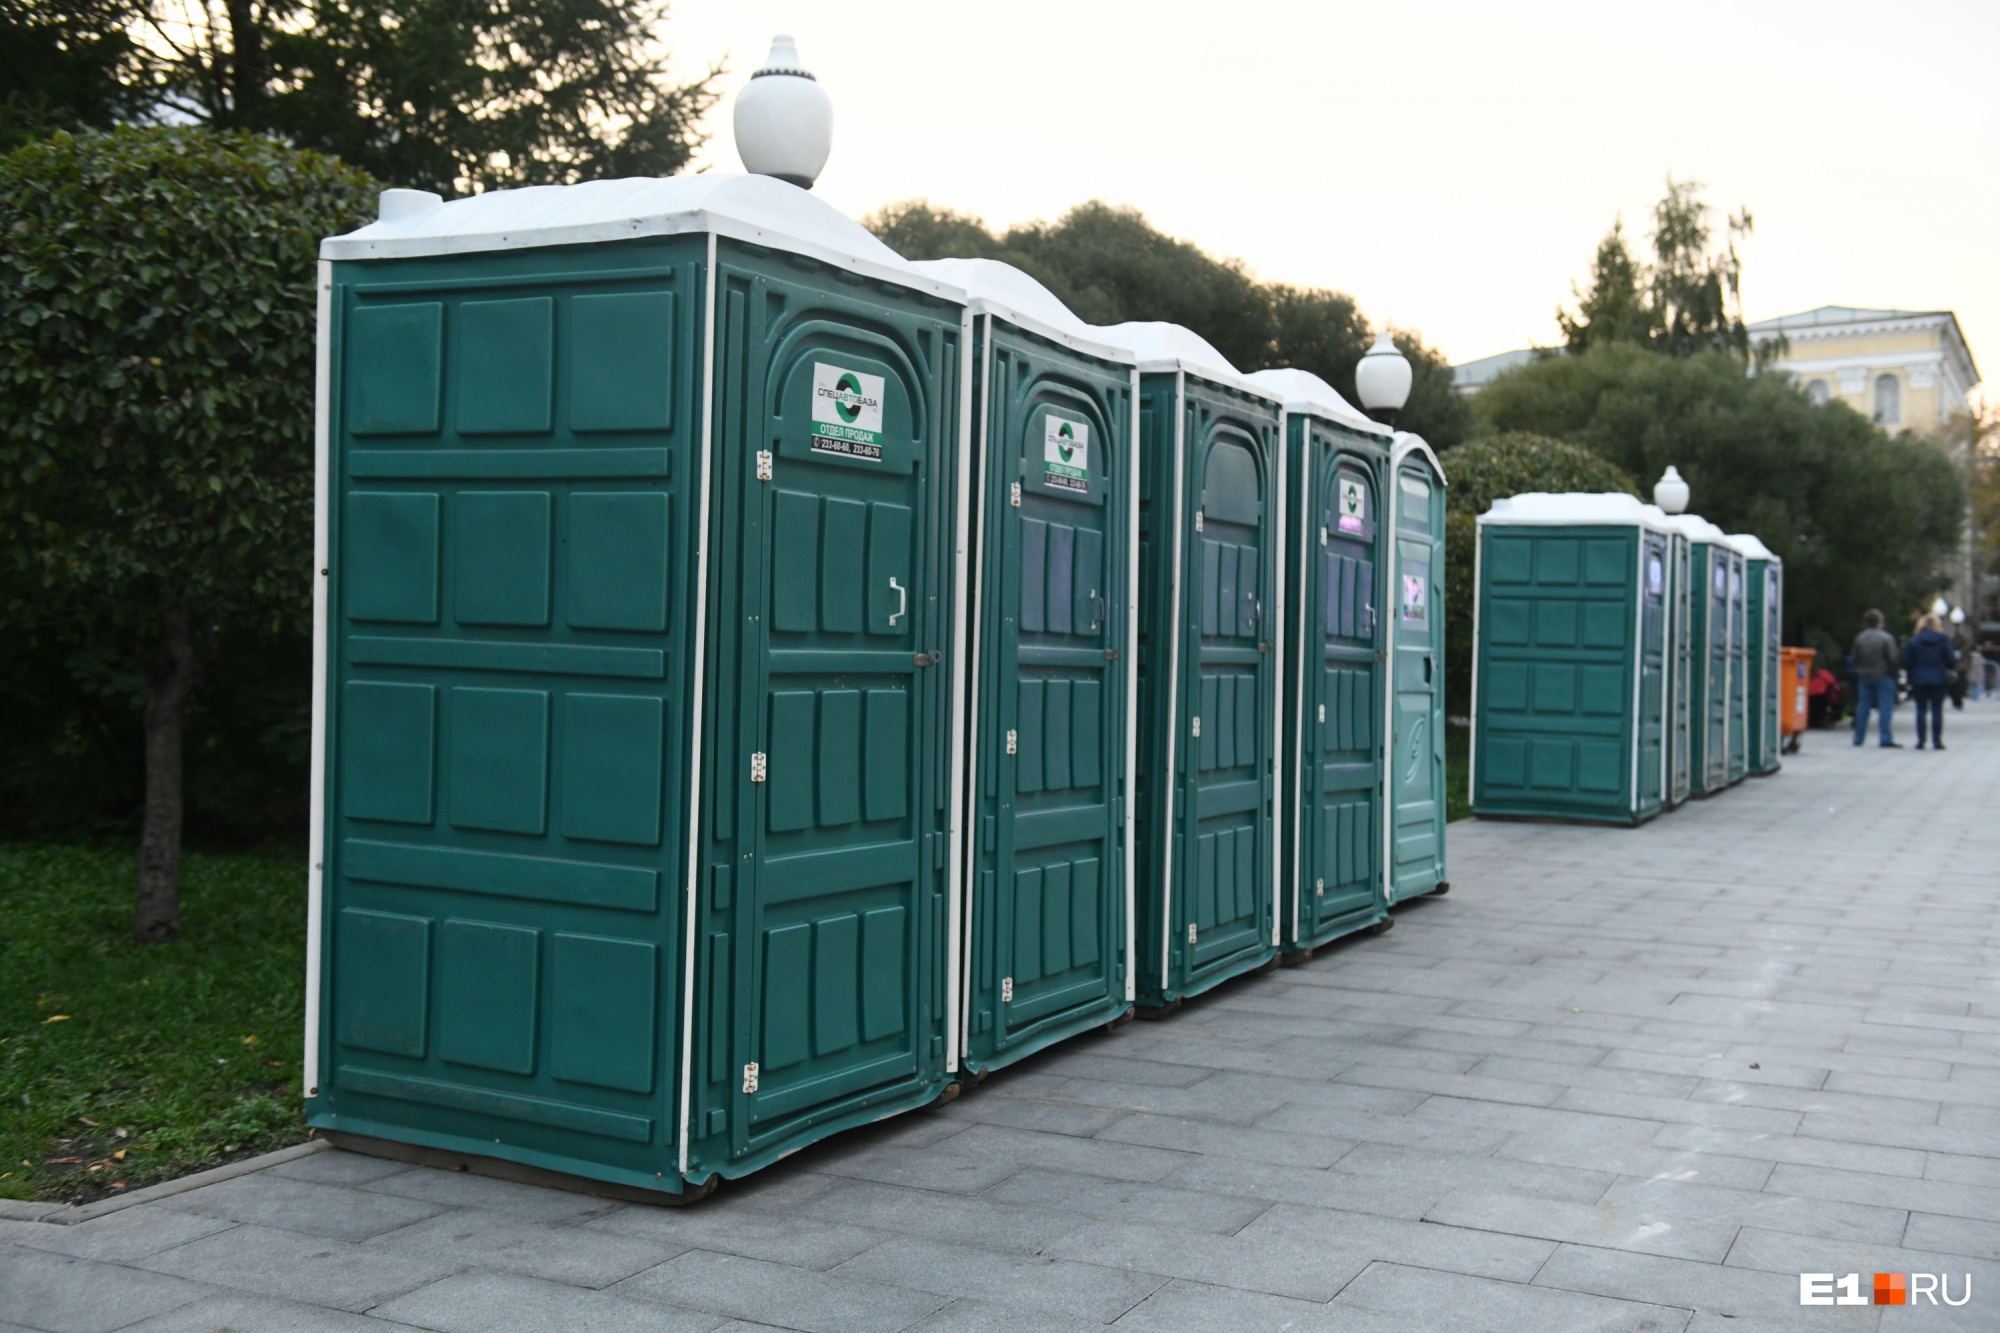 К «Ночи музыки» в Екатеринбурге установят почти две сотни мобильных туалетов